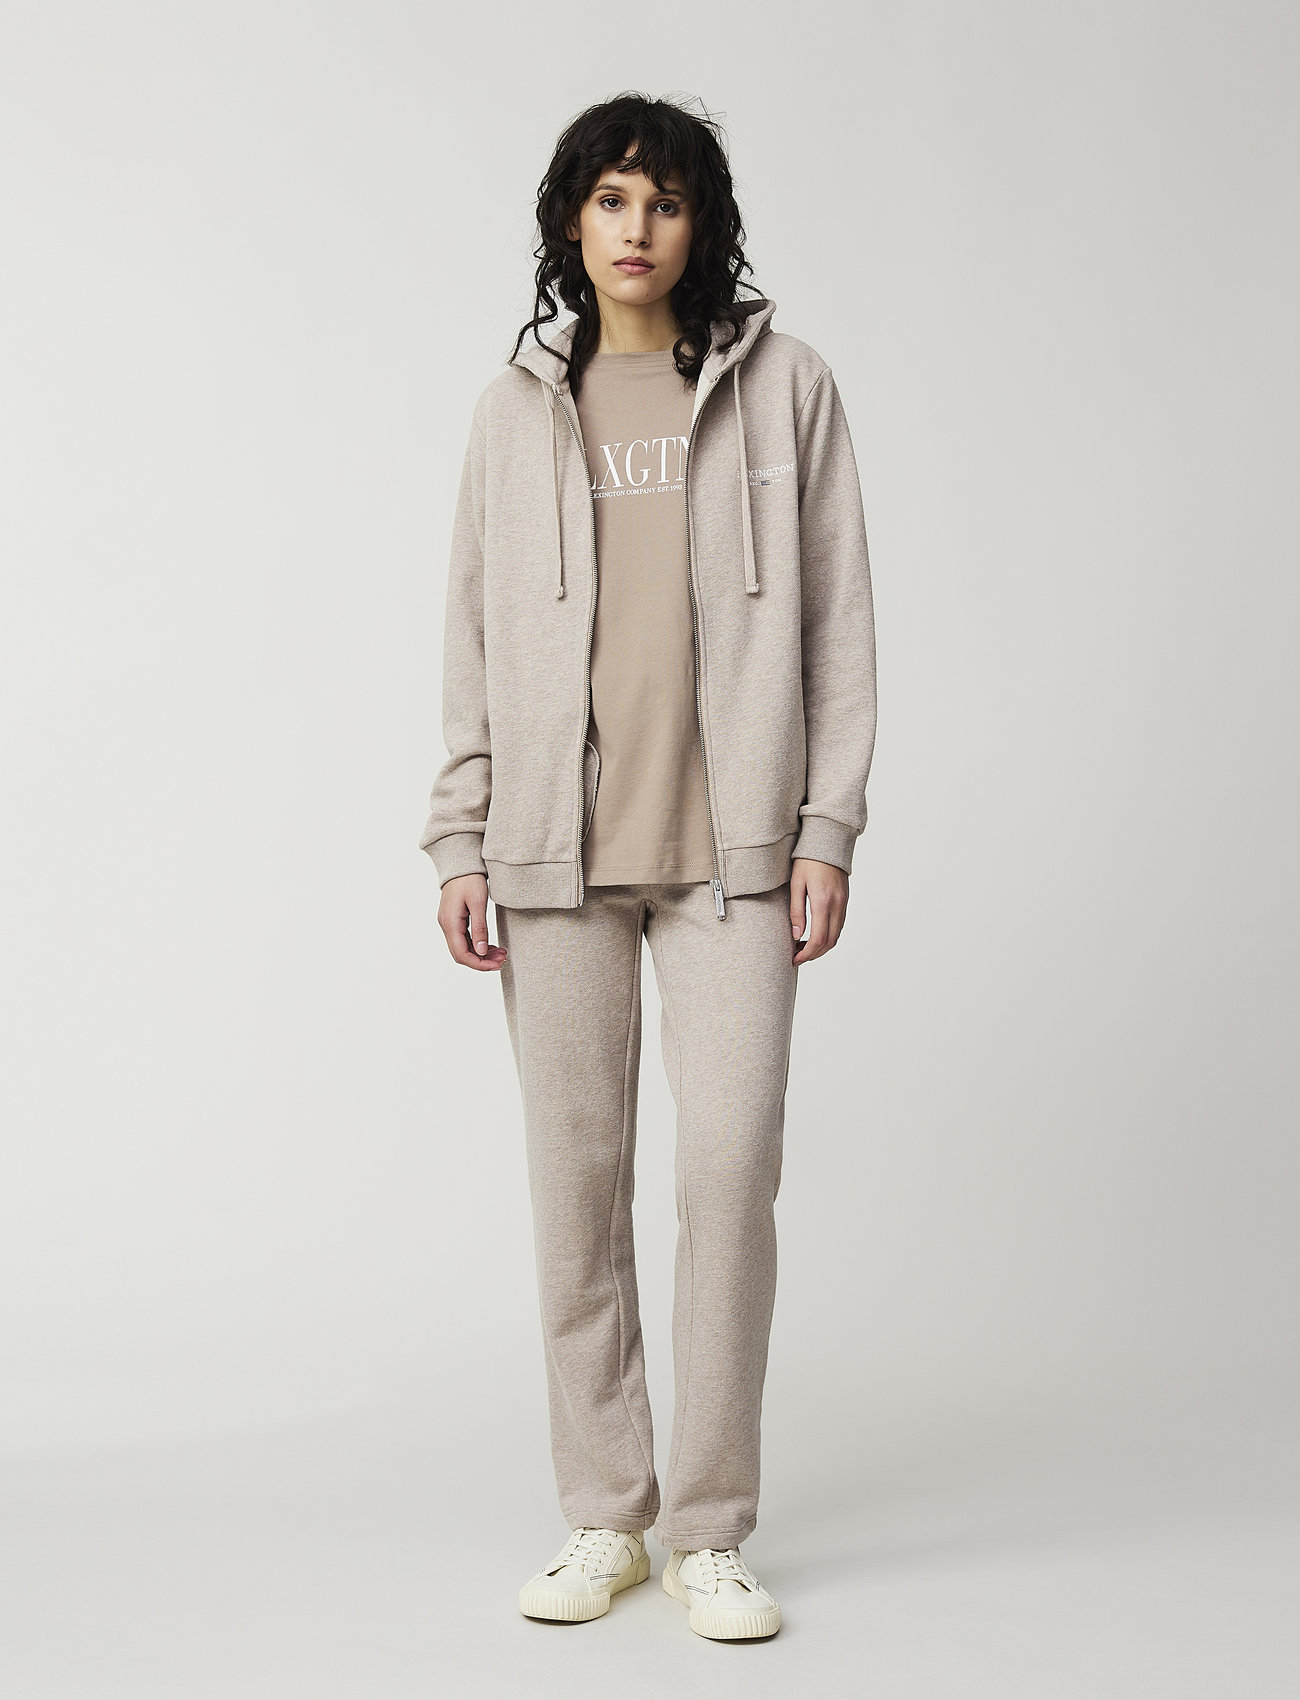 Lexington Clothing - Chloe Zip Hood - hoodies - light brown melange - 1